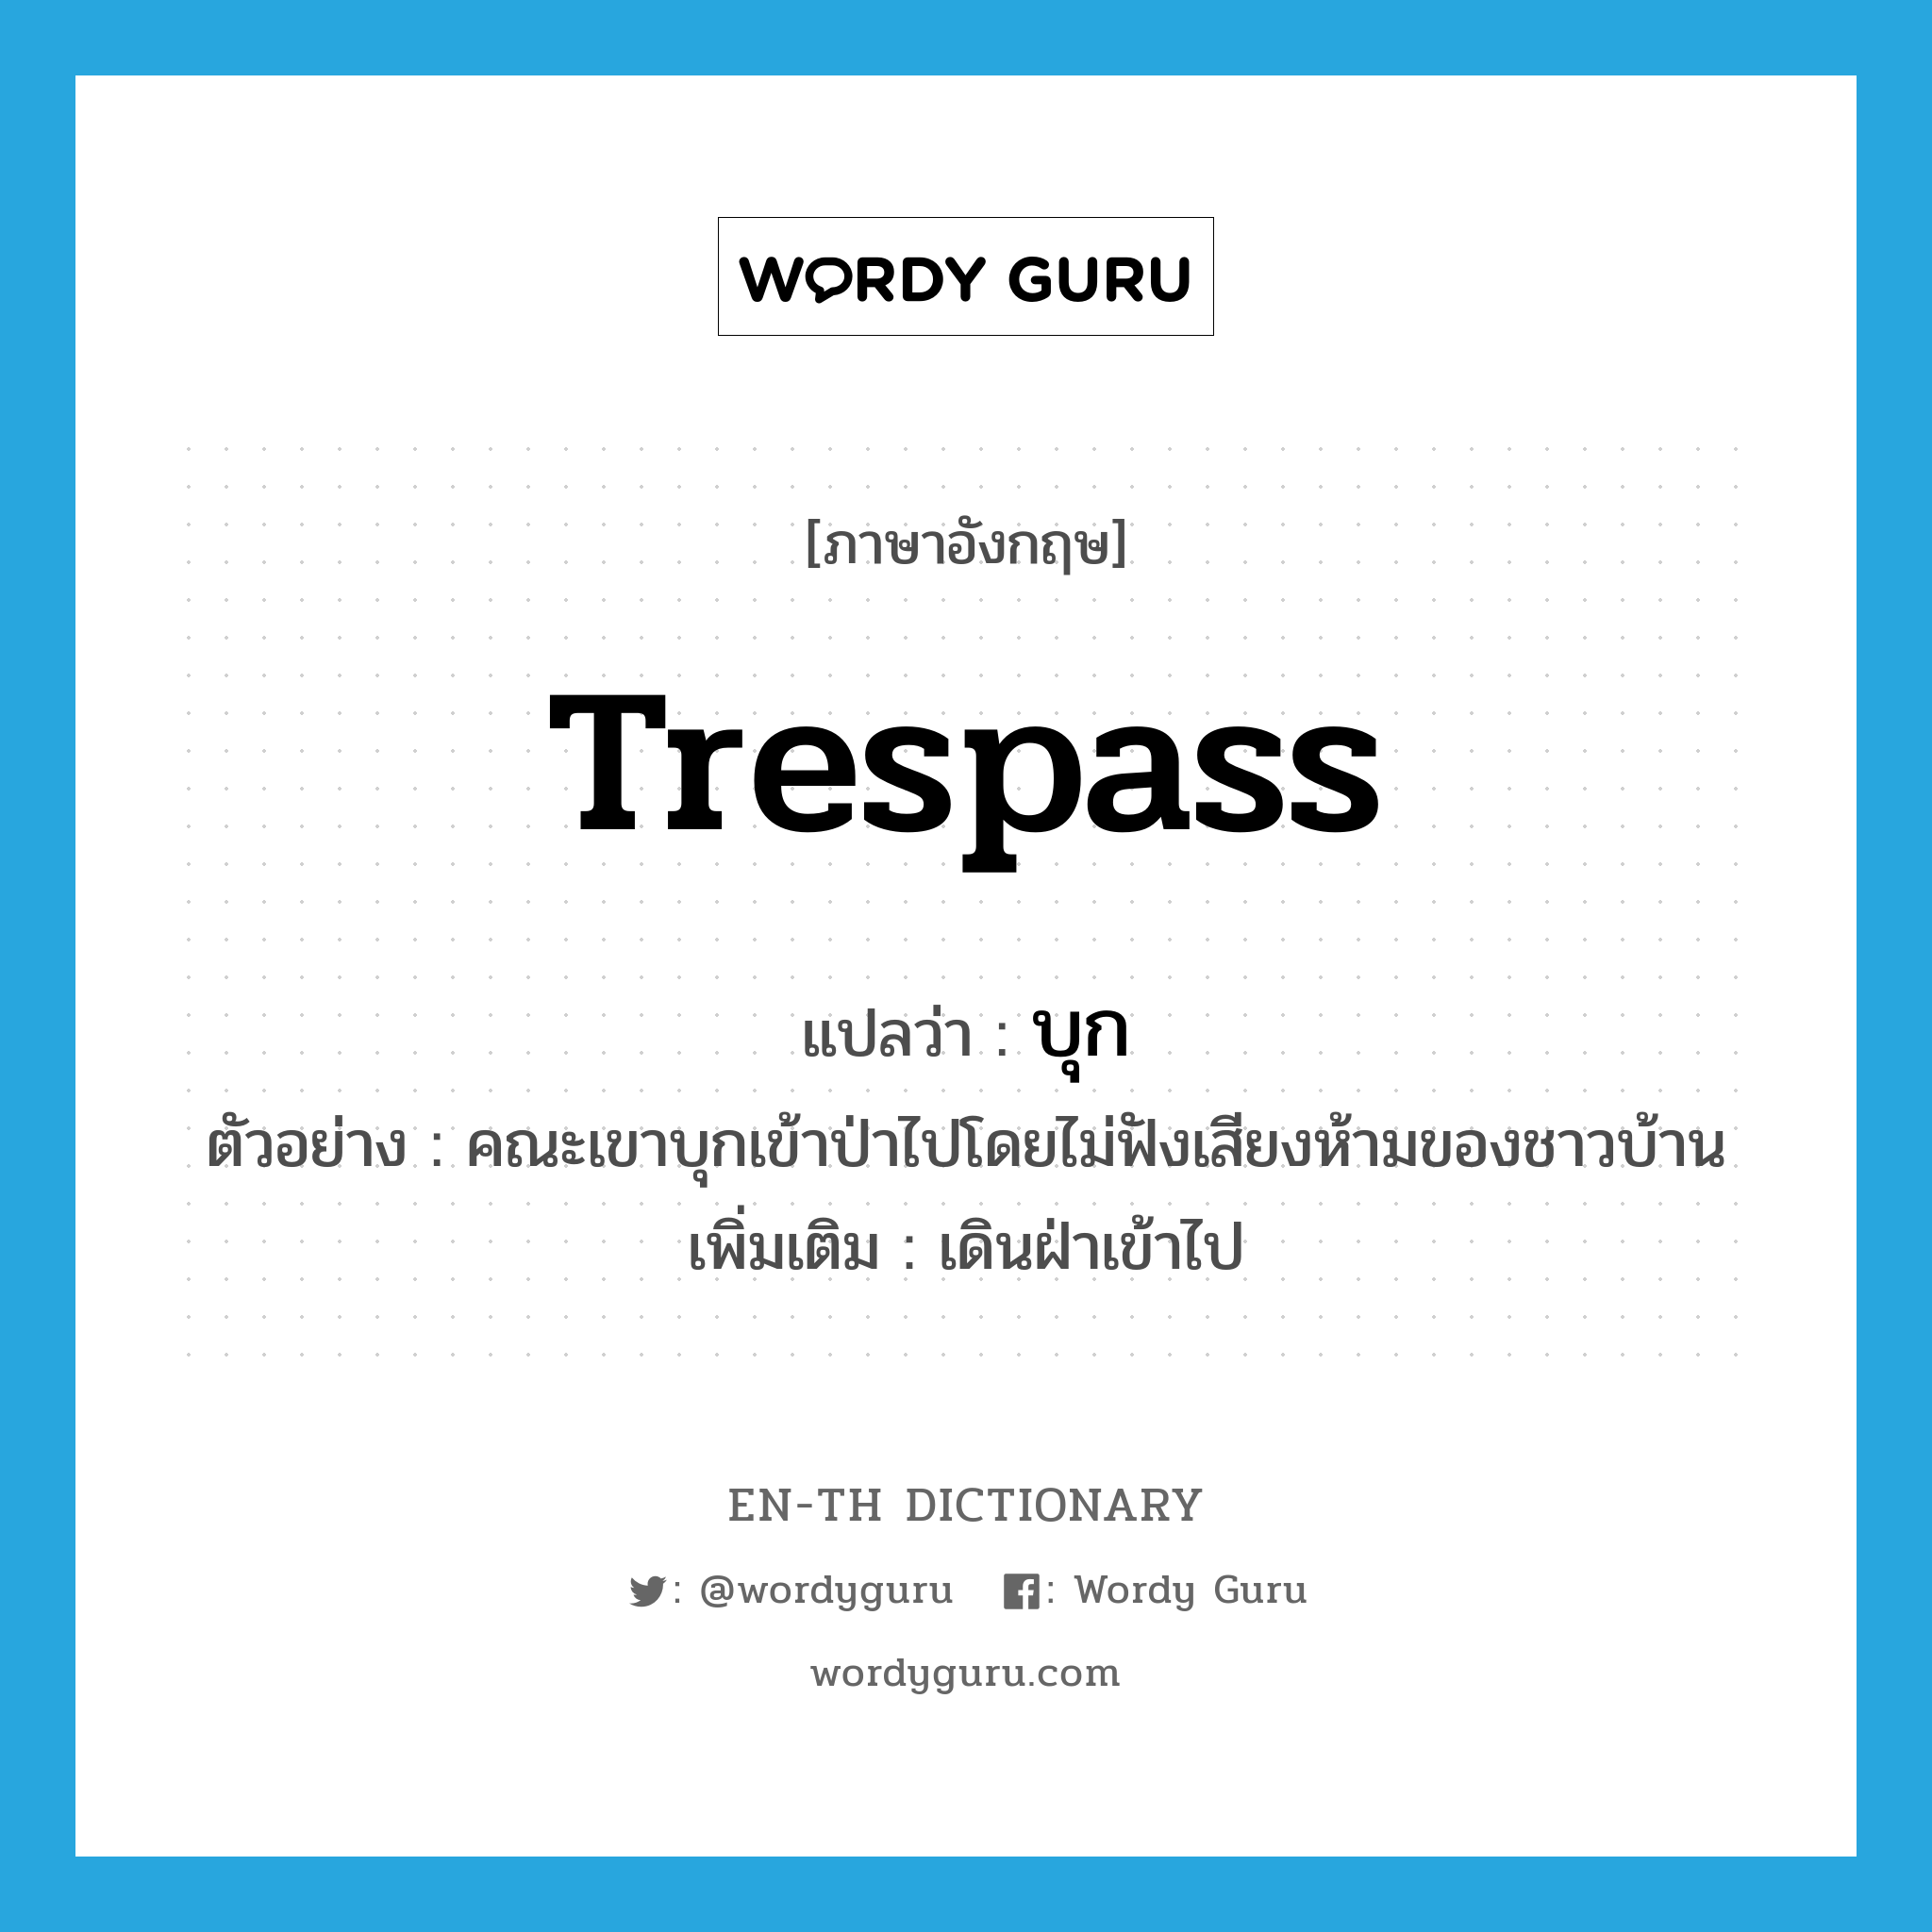 trespass แปลว่า?, คำศัพท์ภาษาอังกฤษ trespass แปลว่า บุก ประเภท V ตัวอย่าง คณะเขาบุกเข้าป่าไปโดยไม่ฟังเสียงห้ามของชาวบ้าน เพิ่มเติม เดินฝ่าเข้าไป หมวด V